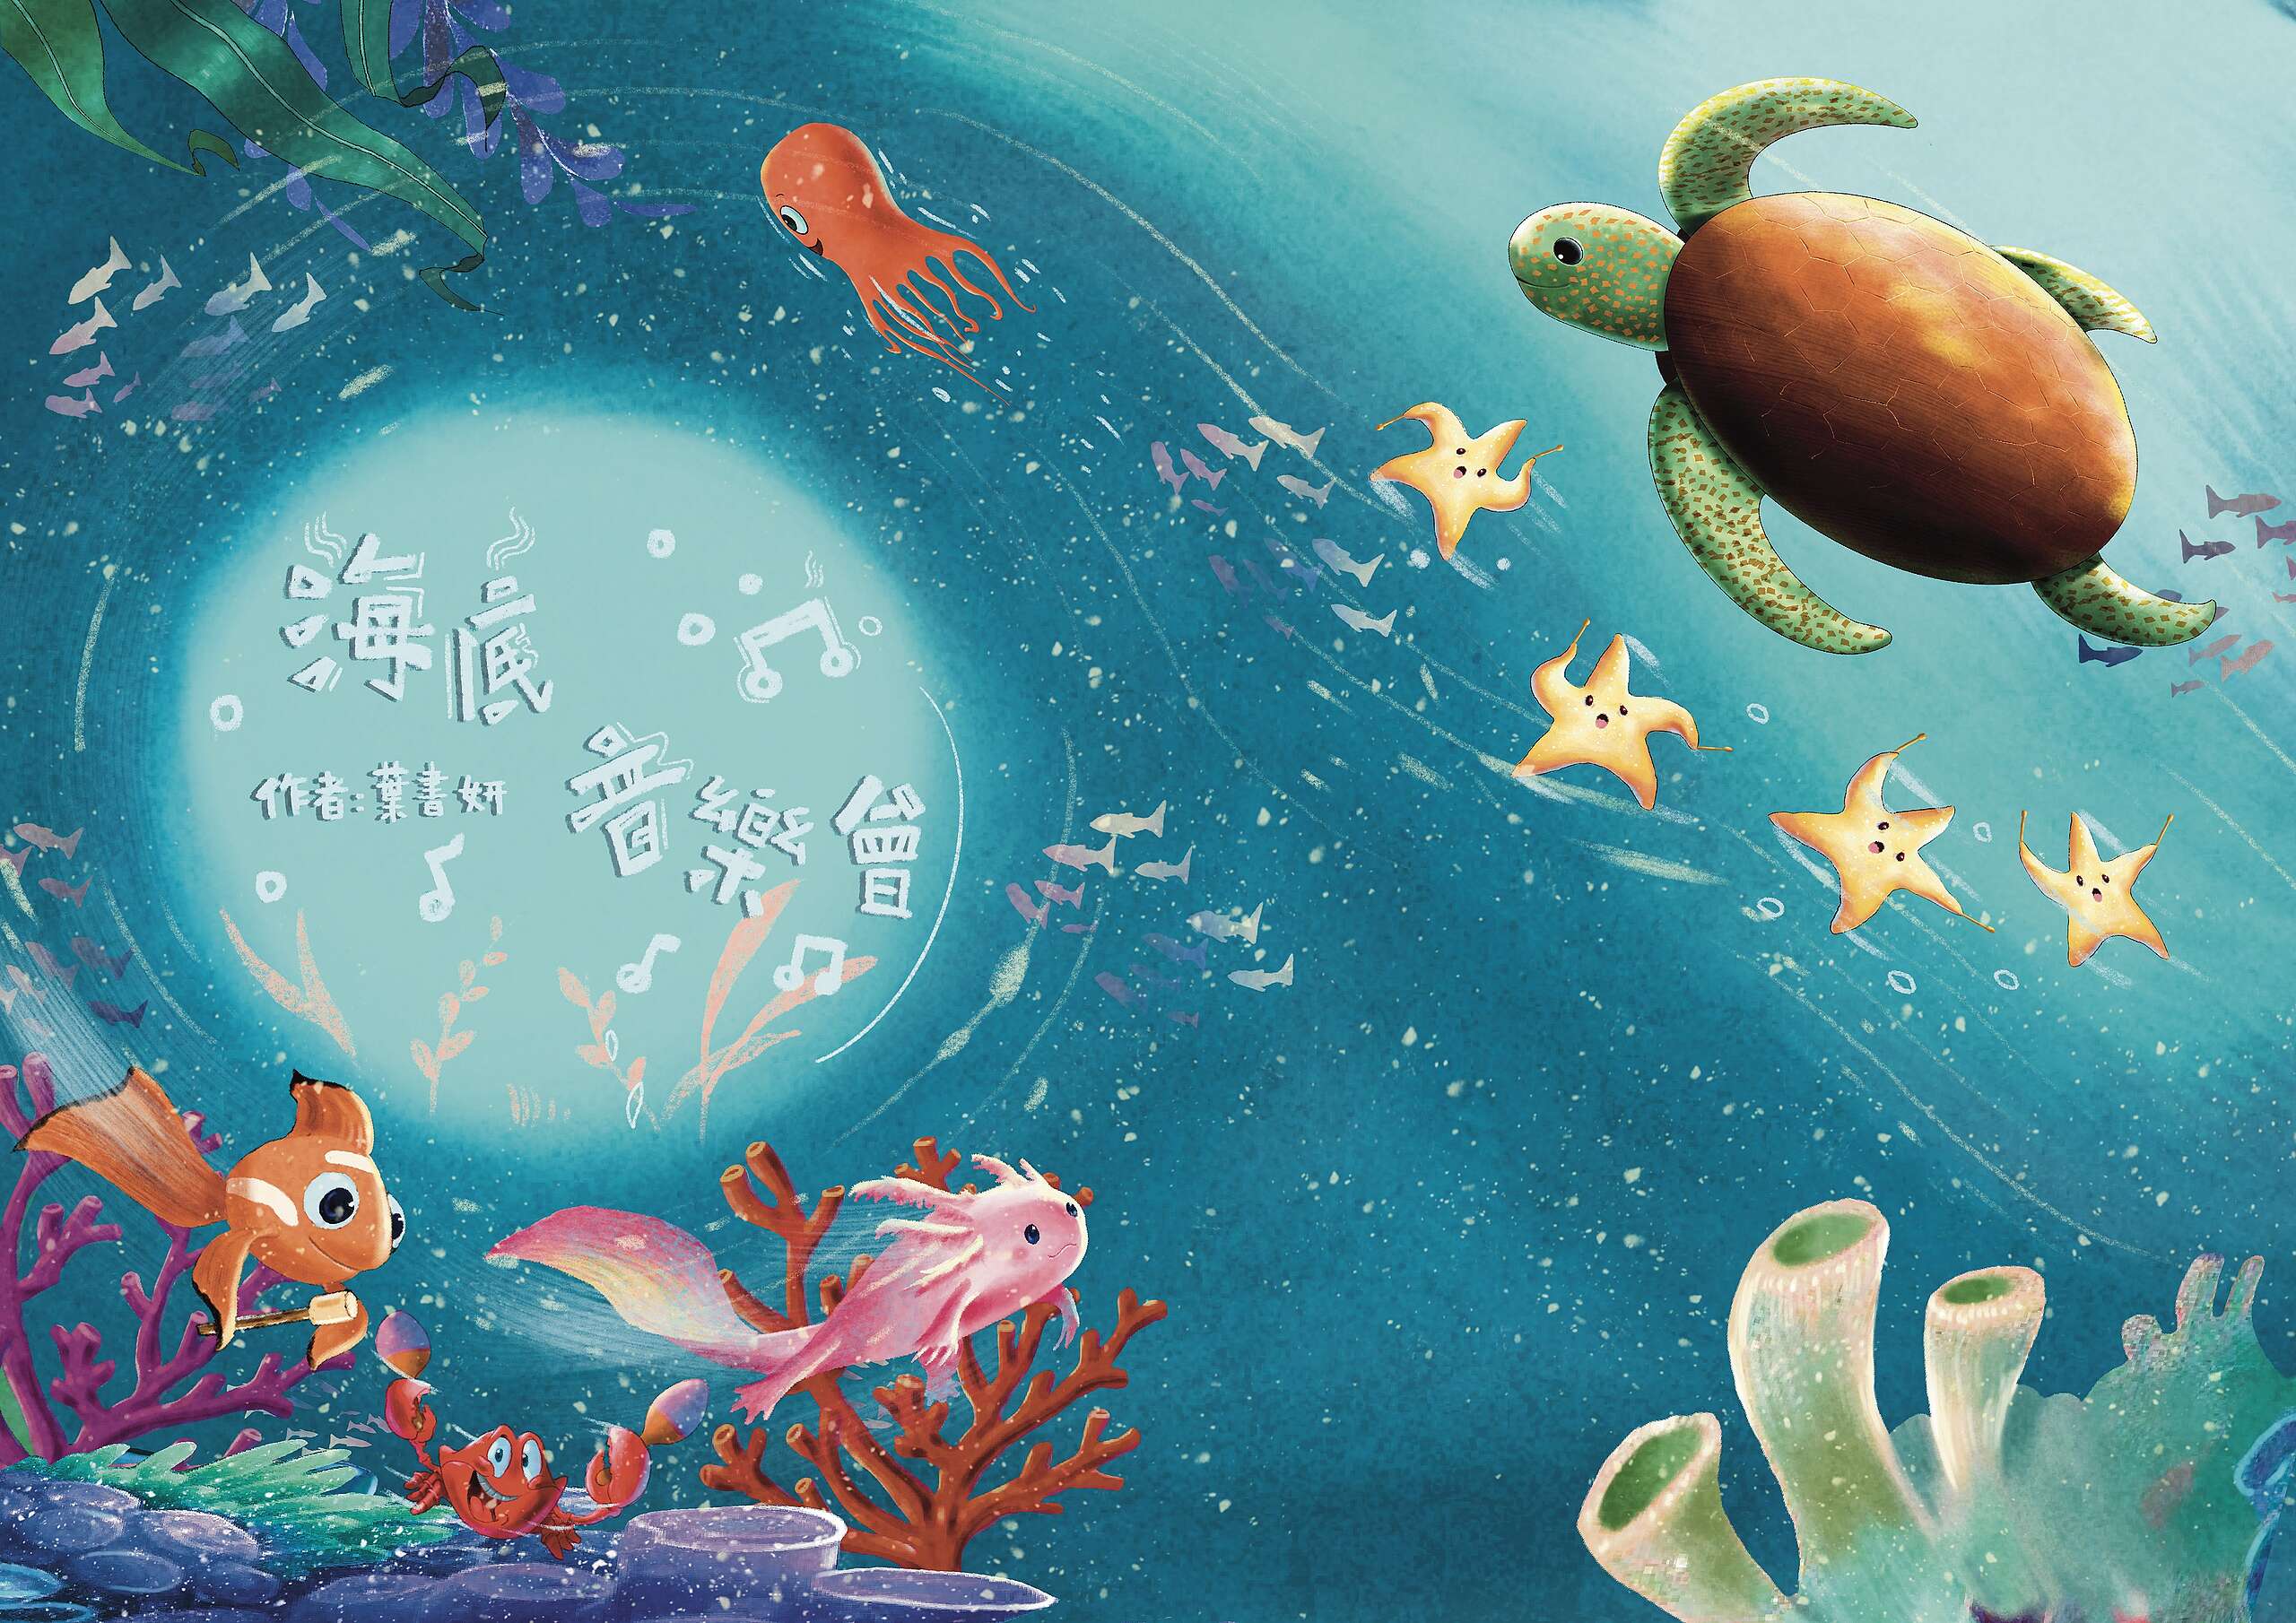 書妍希望透過創作《海底音樂會》繪本，將海洋保育的理念傳達給更多比自己年幼的孩童。